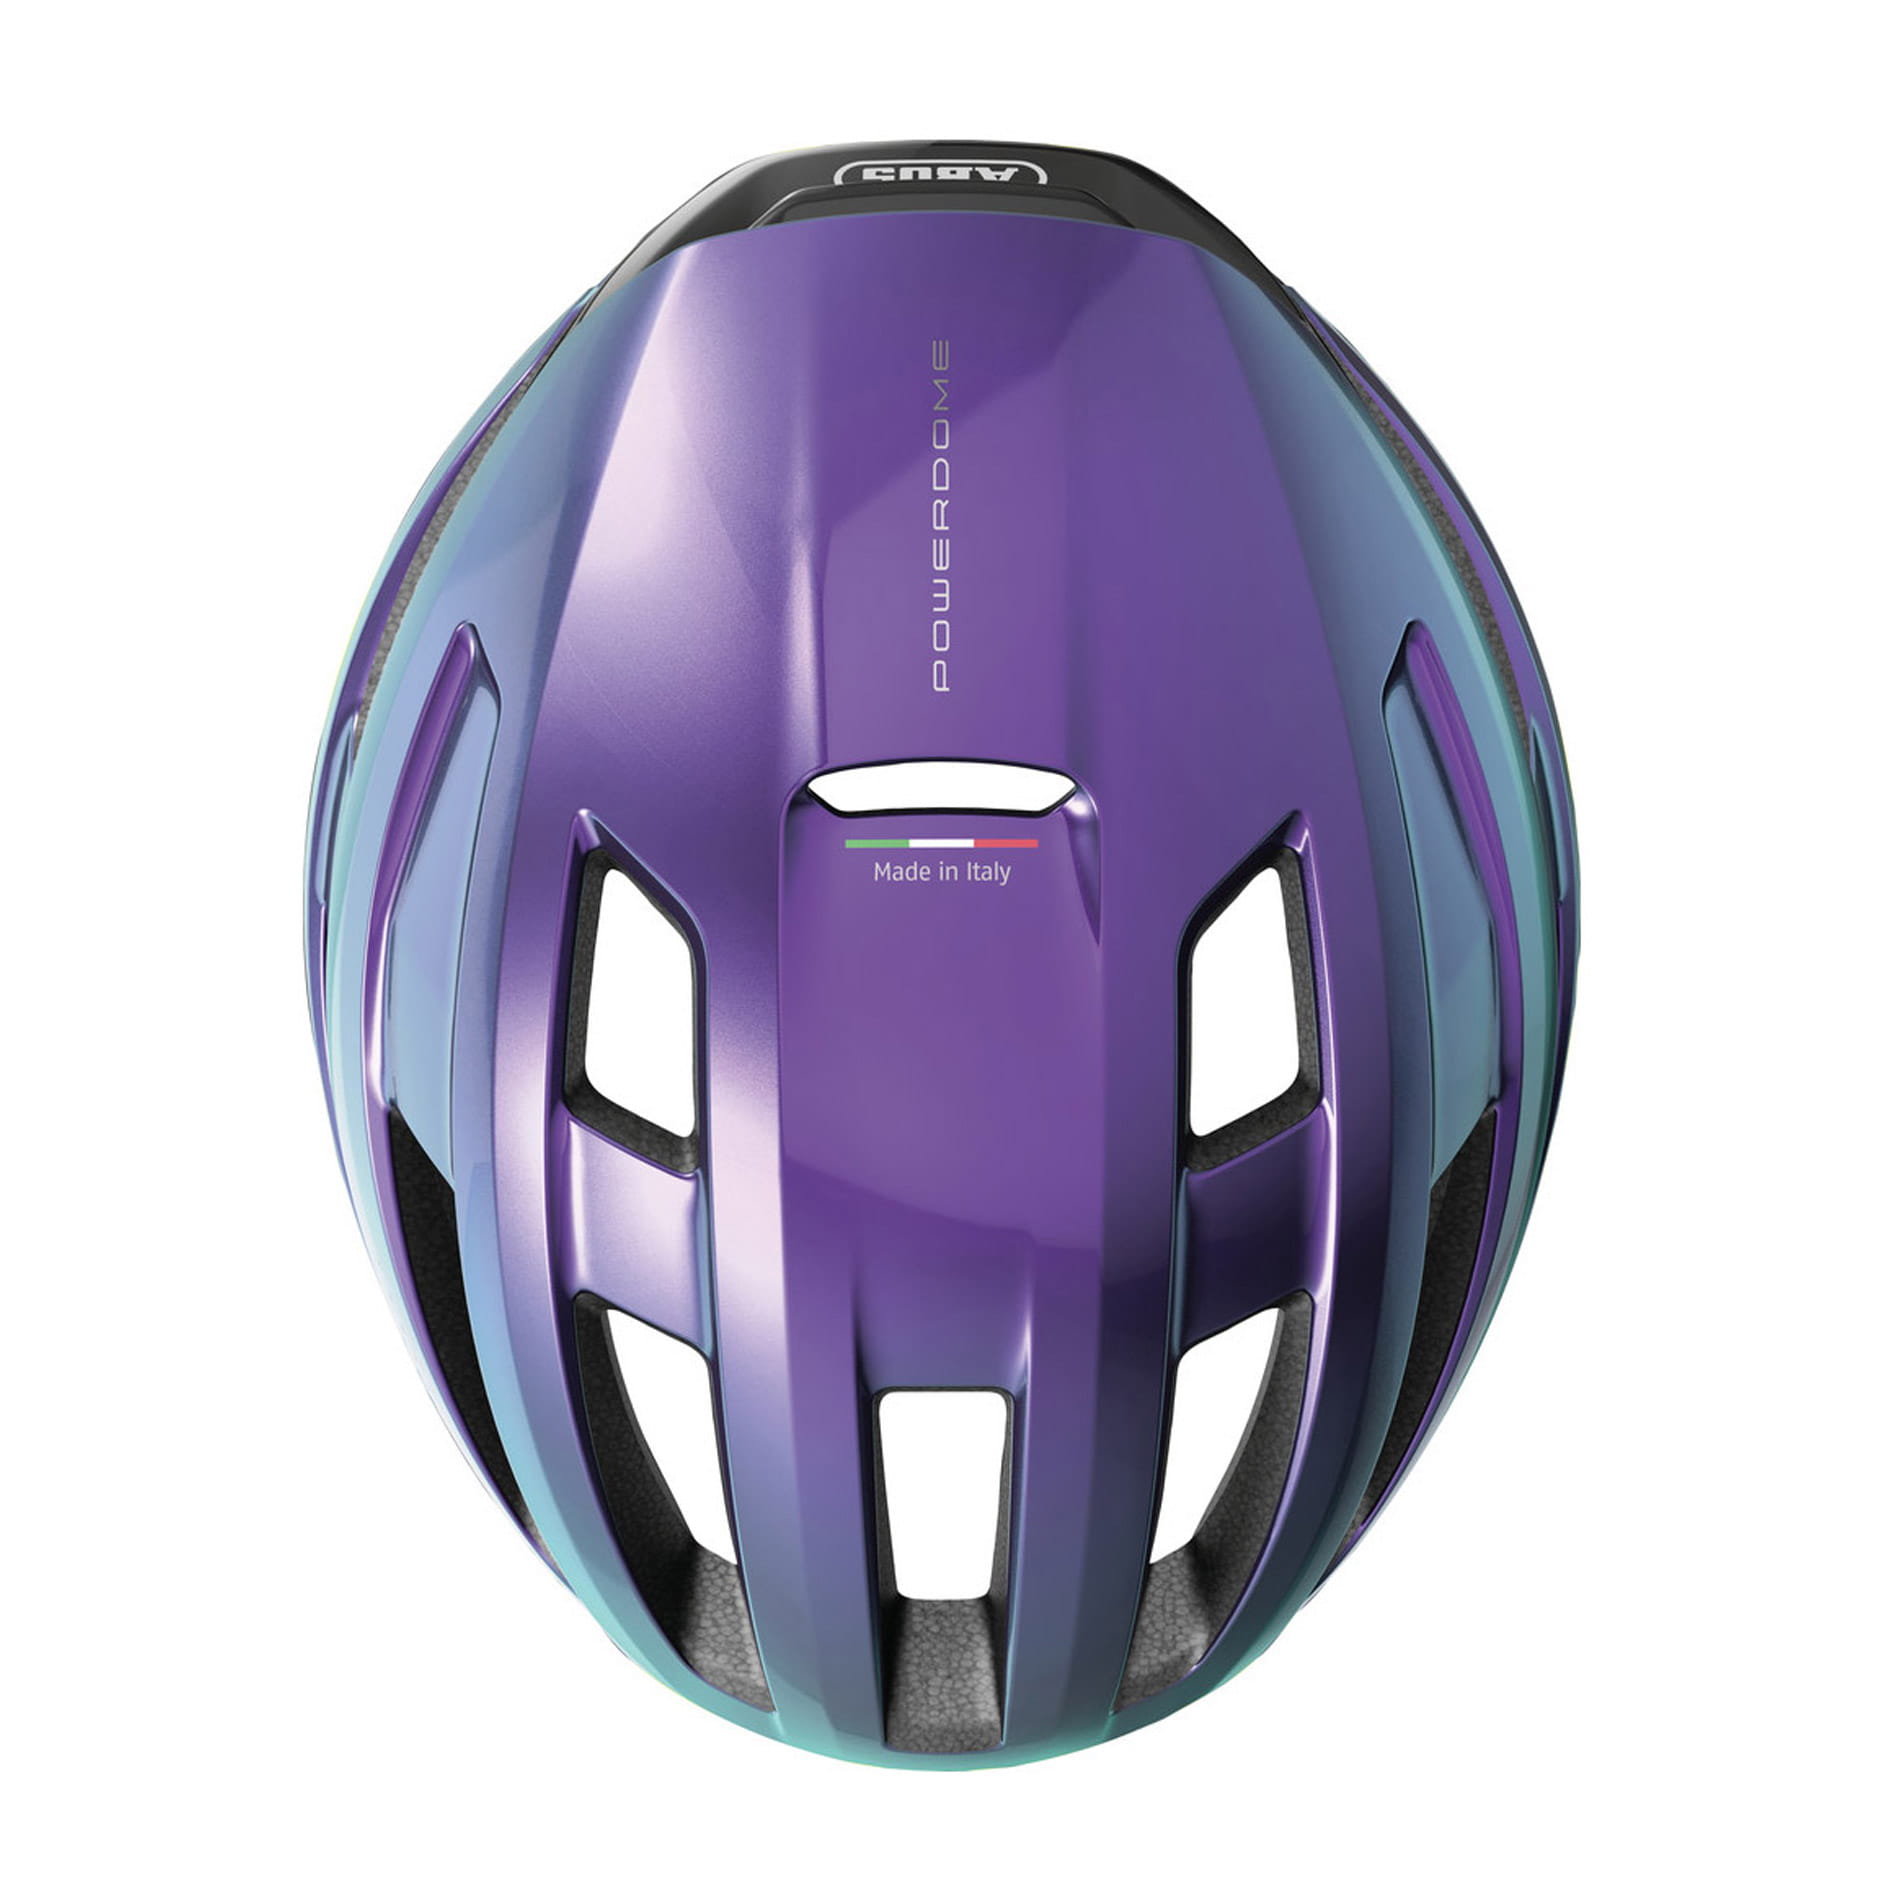 ABUS PowerDome Road Bike Helmet